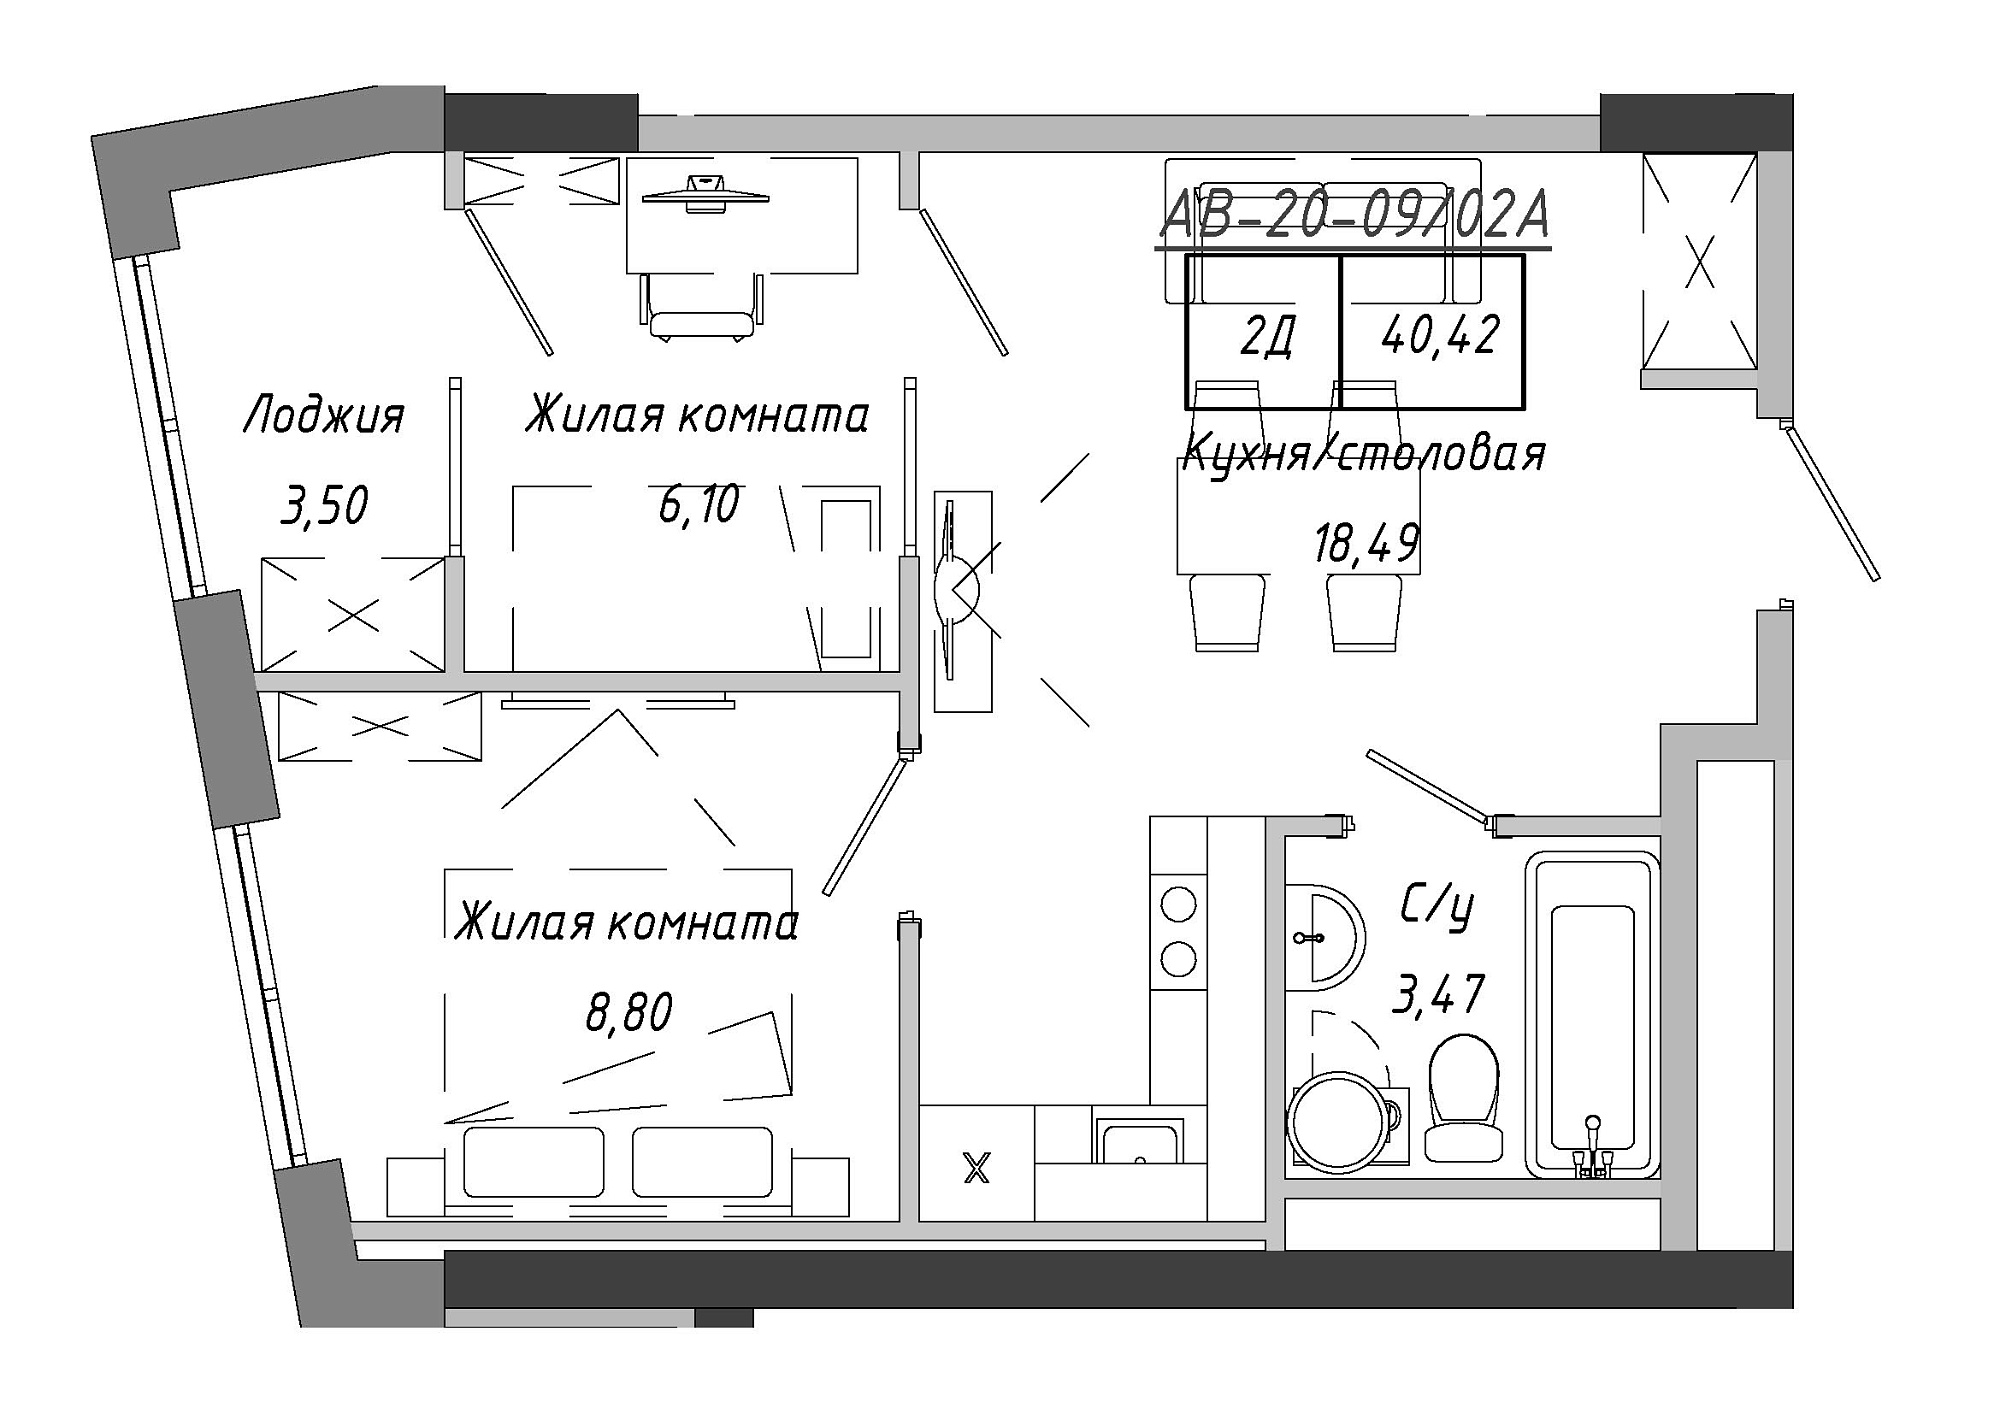 Планировка 2-к квартира площей 41.9м2, AB-20-09/0002а.